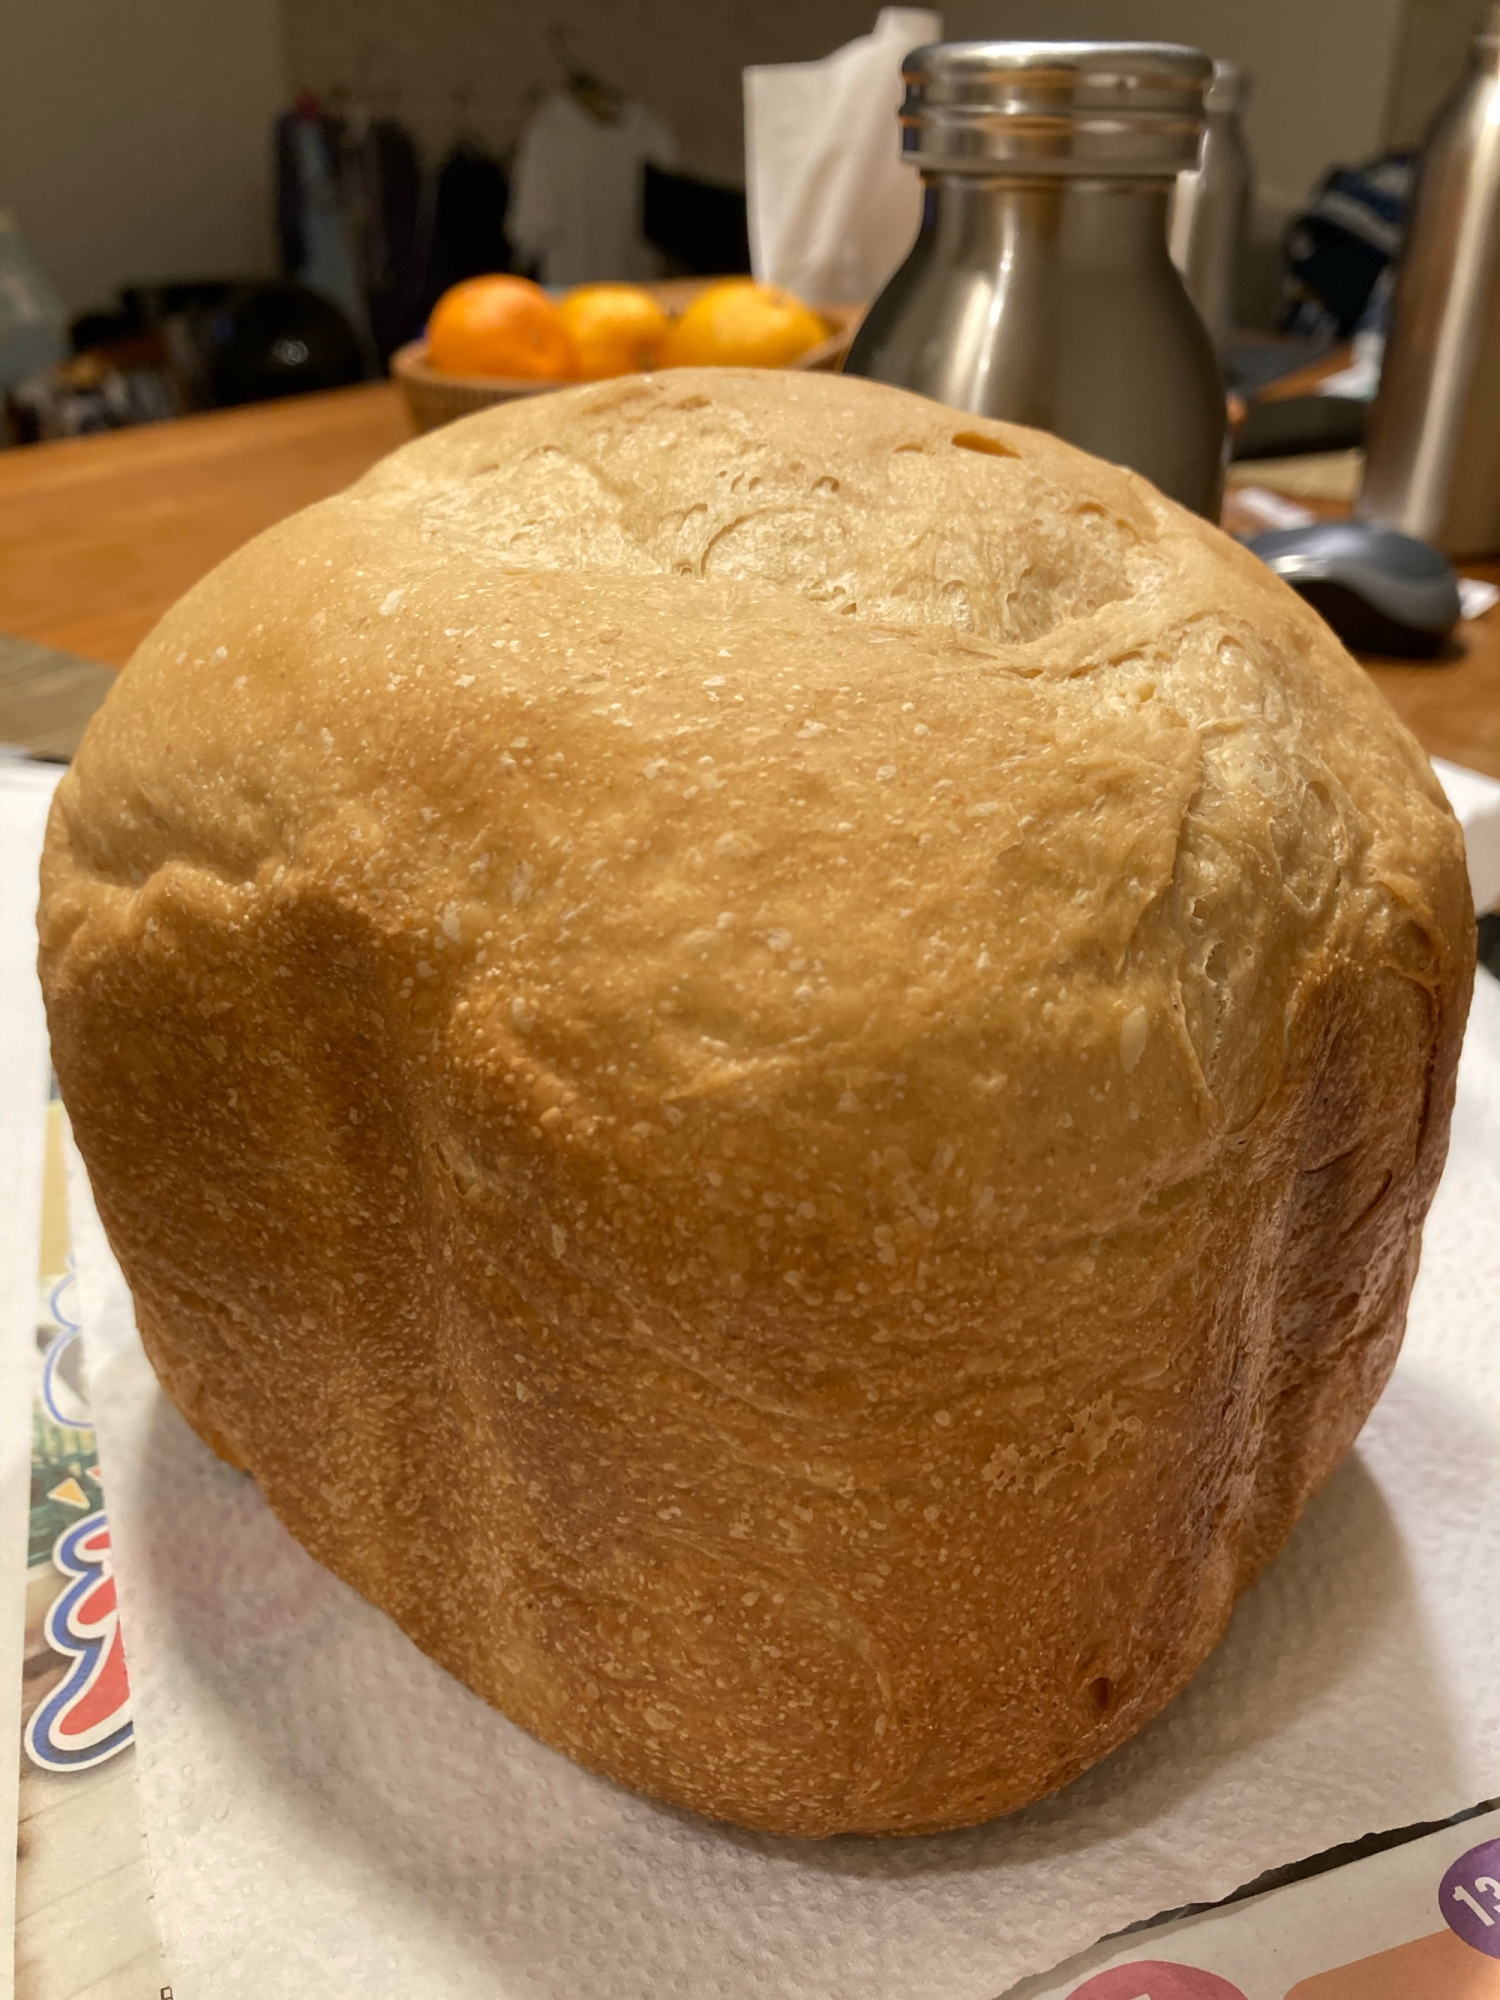 全粒粉100%食パン